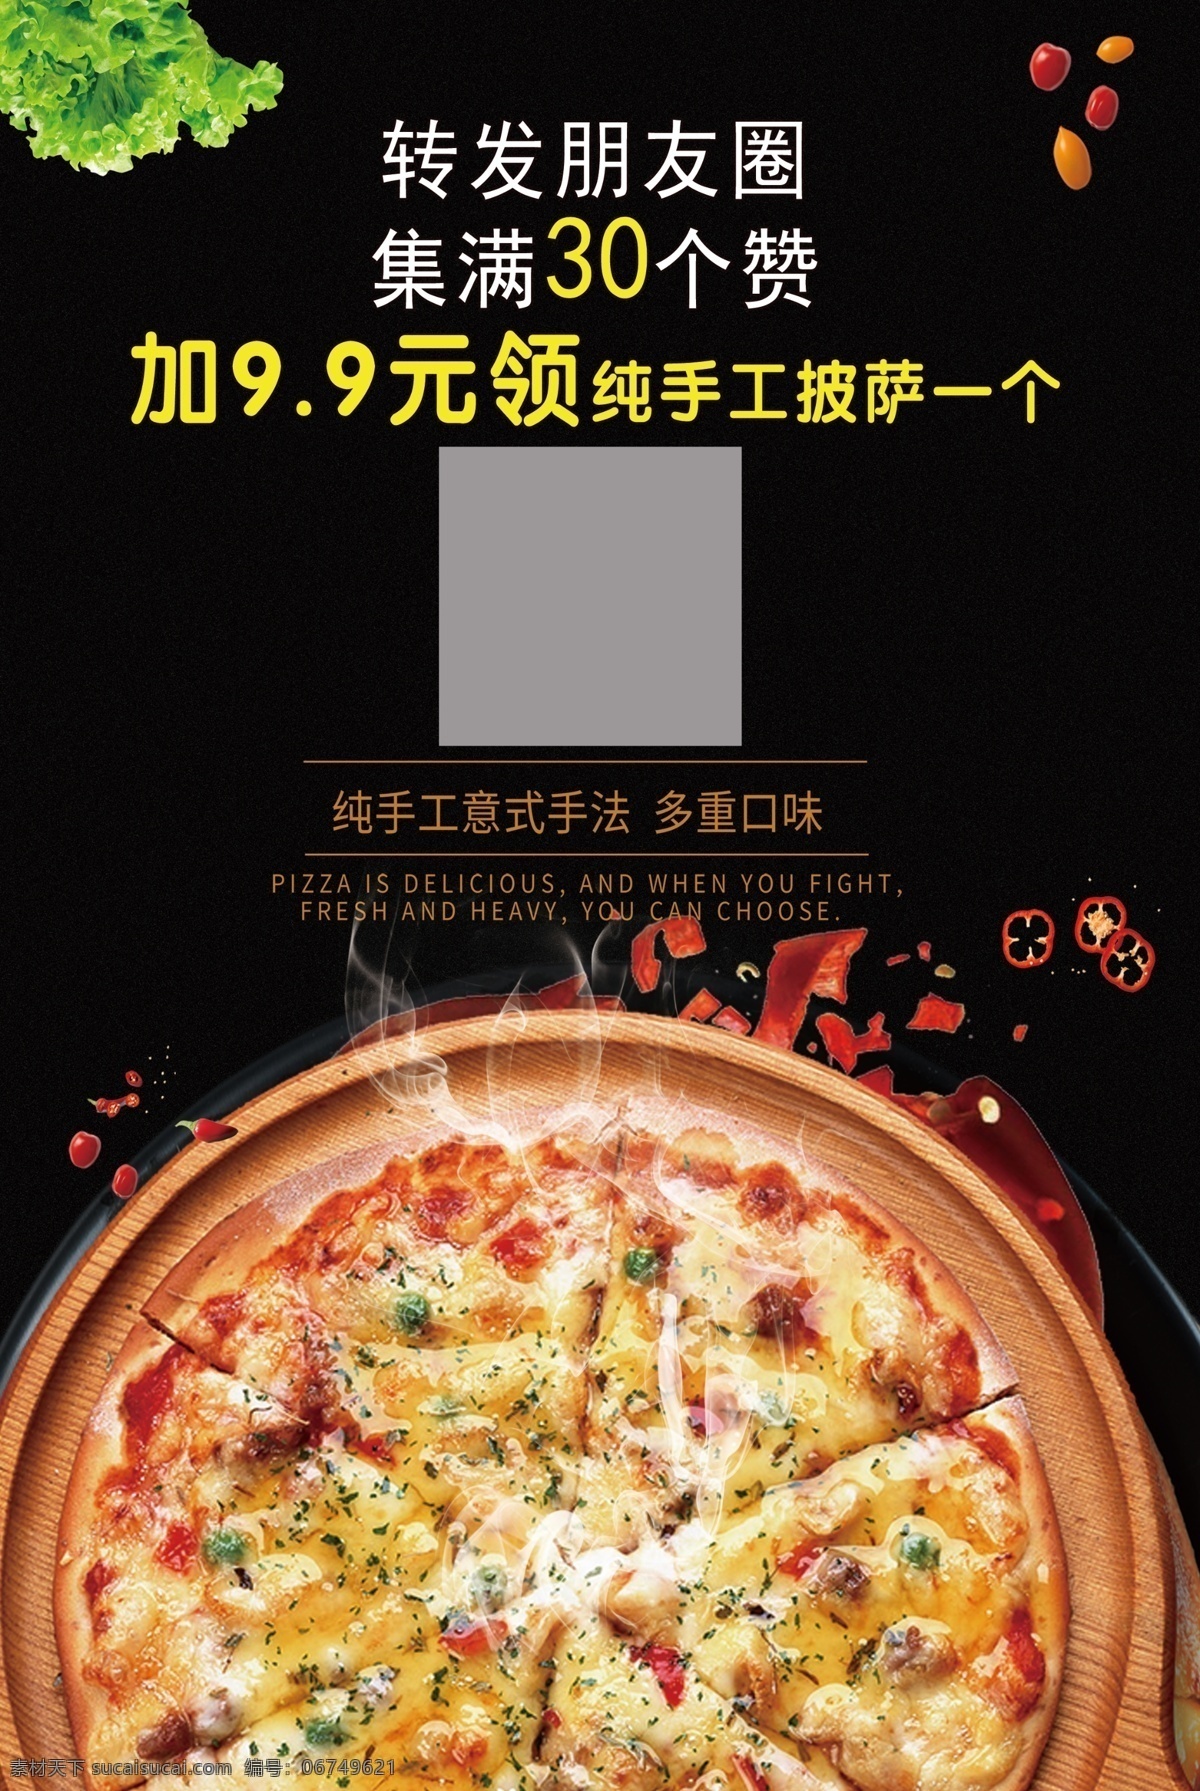 披萨 免费 海报 积攒 免费送 室内广告设计